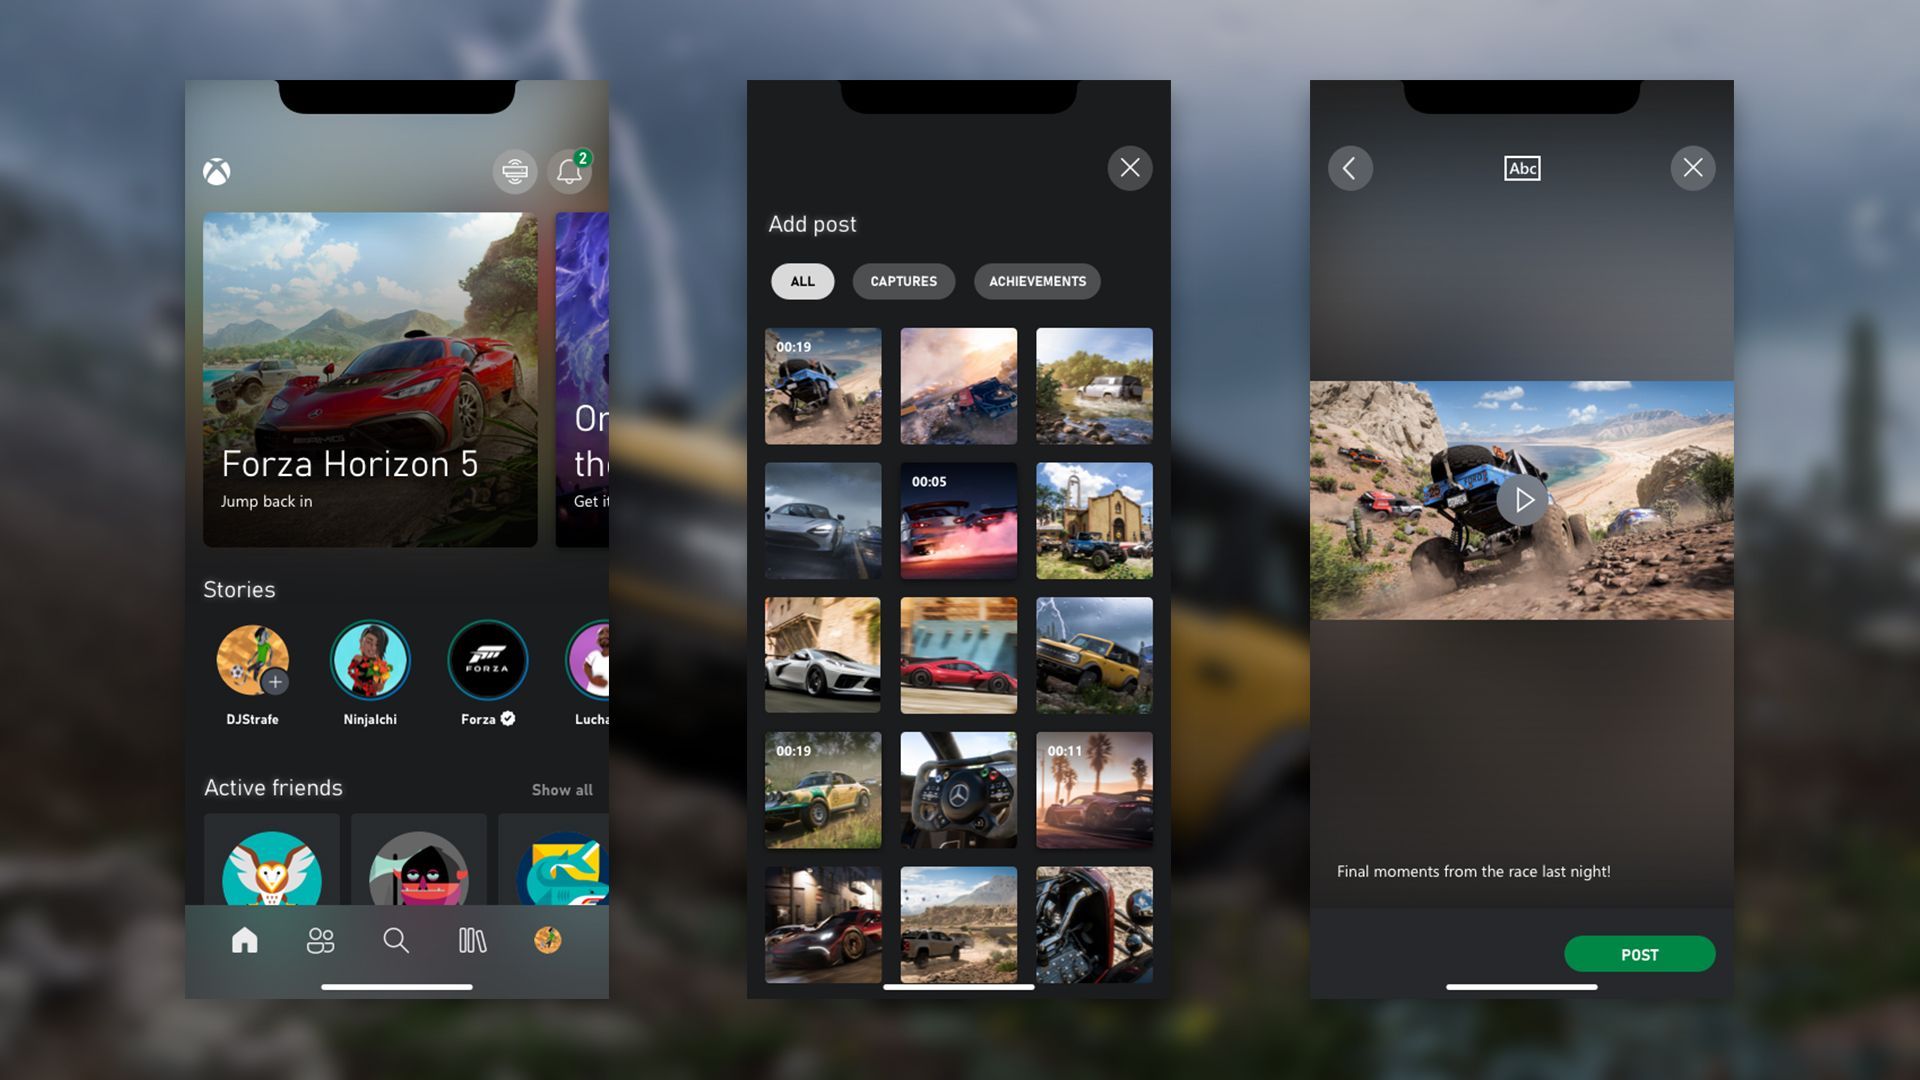 Os usuários do Xbox podem compartilhar capturas de tela e clipes como histórias no estilo do Instagram